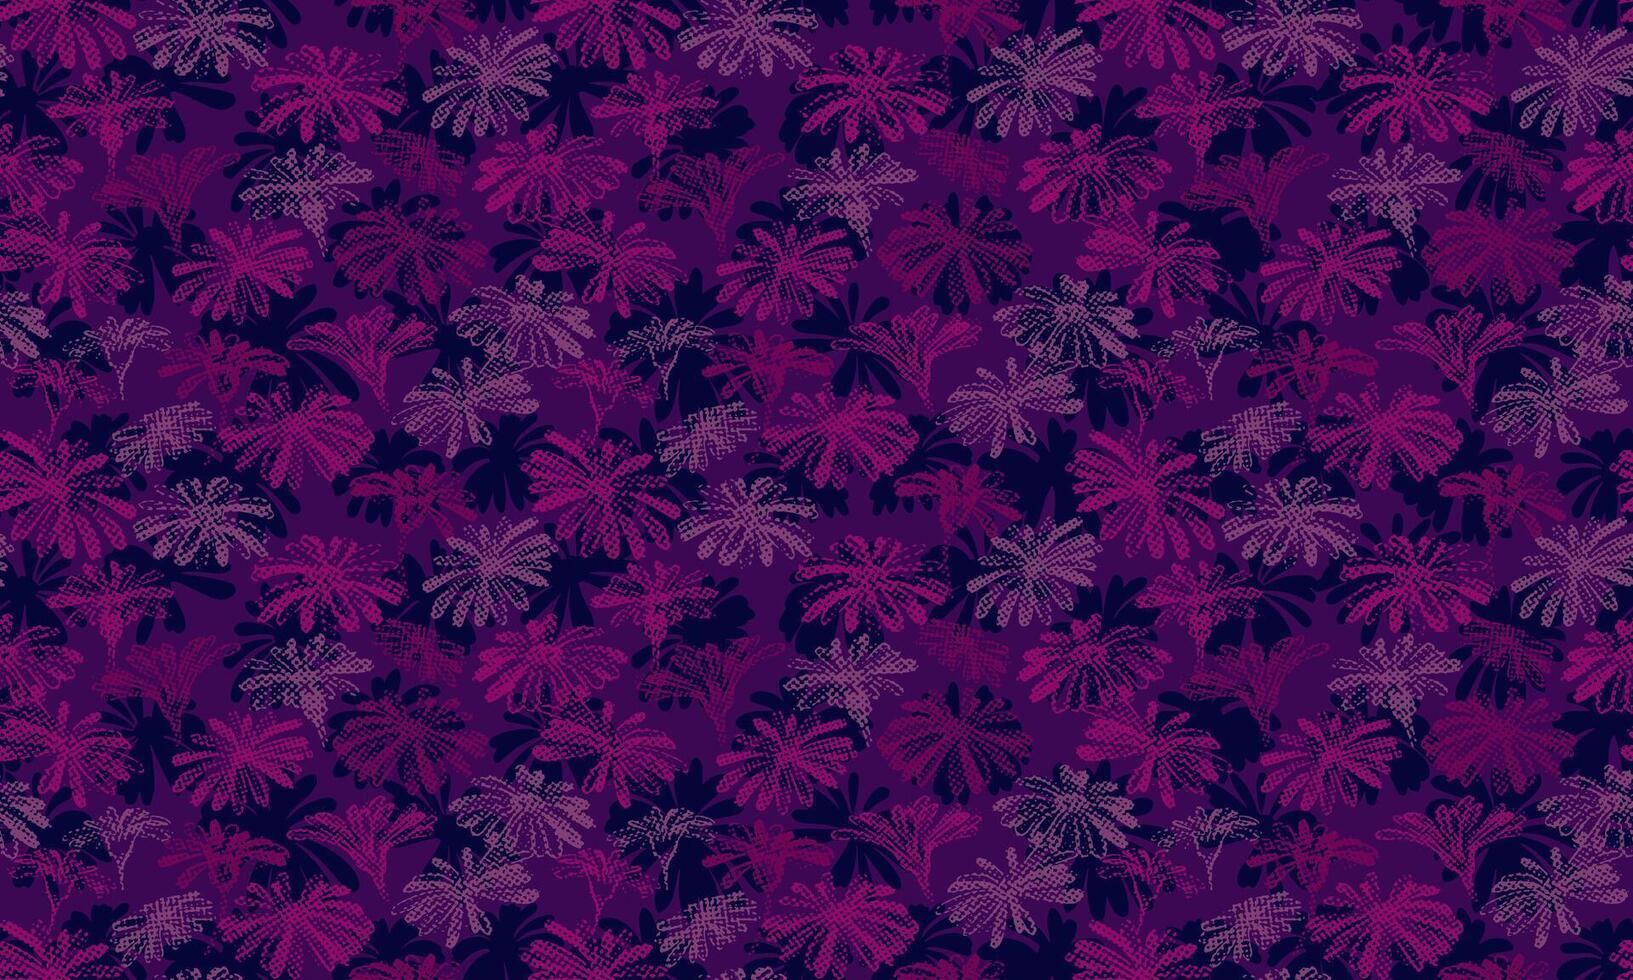 beschwingt Burgund Silhouetten gestalten Blumen nahtlos Muster auf ein dunkel lila Hintergrund. Vektor Hand gezeichnet skizzieren. Bürste texturiert Blumen- Drucken. Vorlage zum Textil, Oberfläche Design, Stoff, Mode